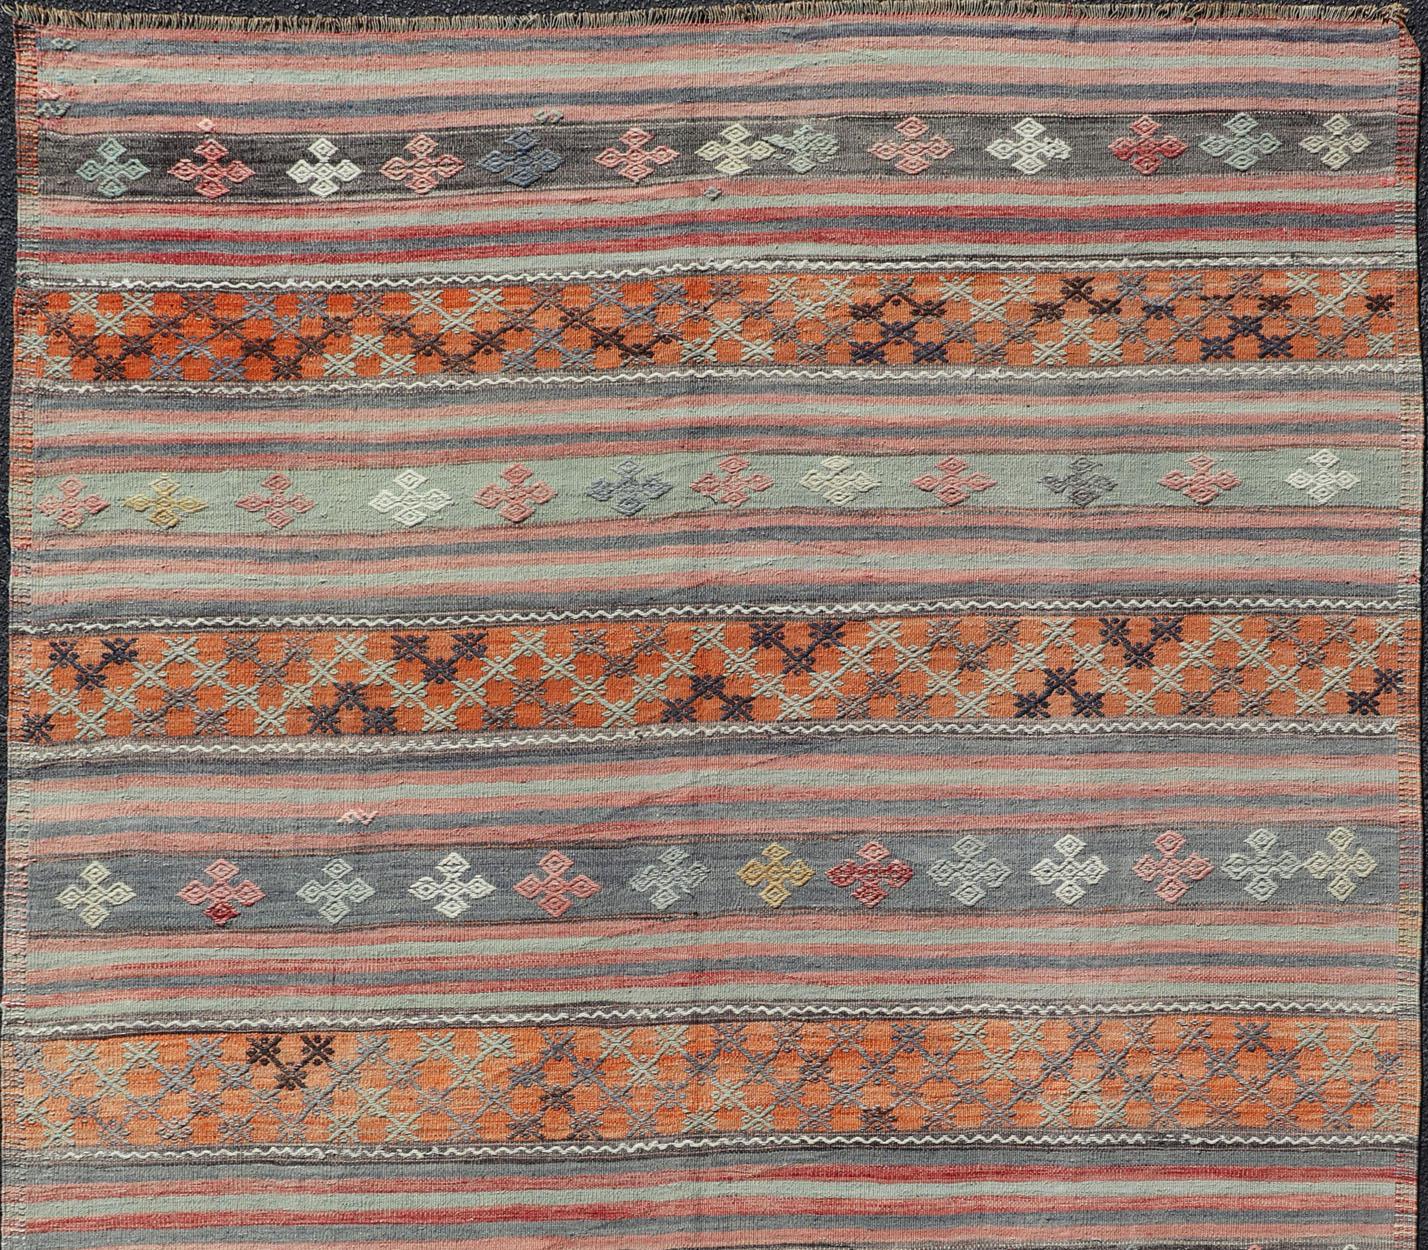 Türkischer Kilim Vintage-Teppich mit verschiedenen Streifenmustern in unterschiedlichen Farben, Teppich TU-NED-1033, Herkunftsland / Art: Türkei / Kelim, ca. Mitte des 20. Jahrhunderts

Dieser einzigartige Mid-Century-Kilim mit einem sich